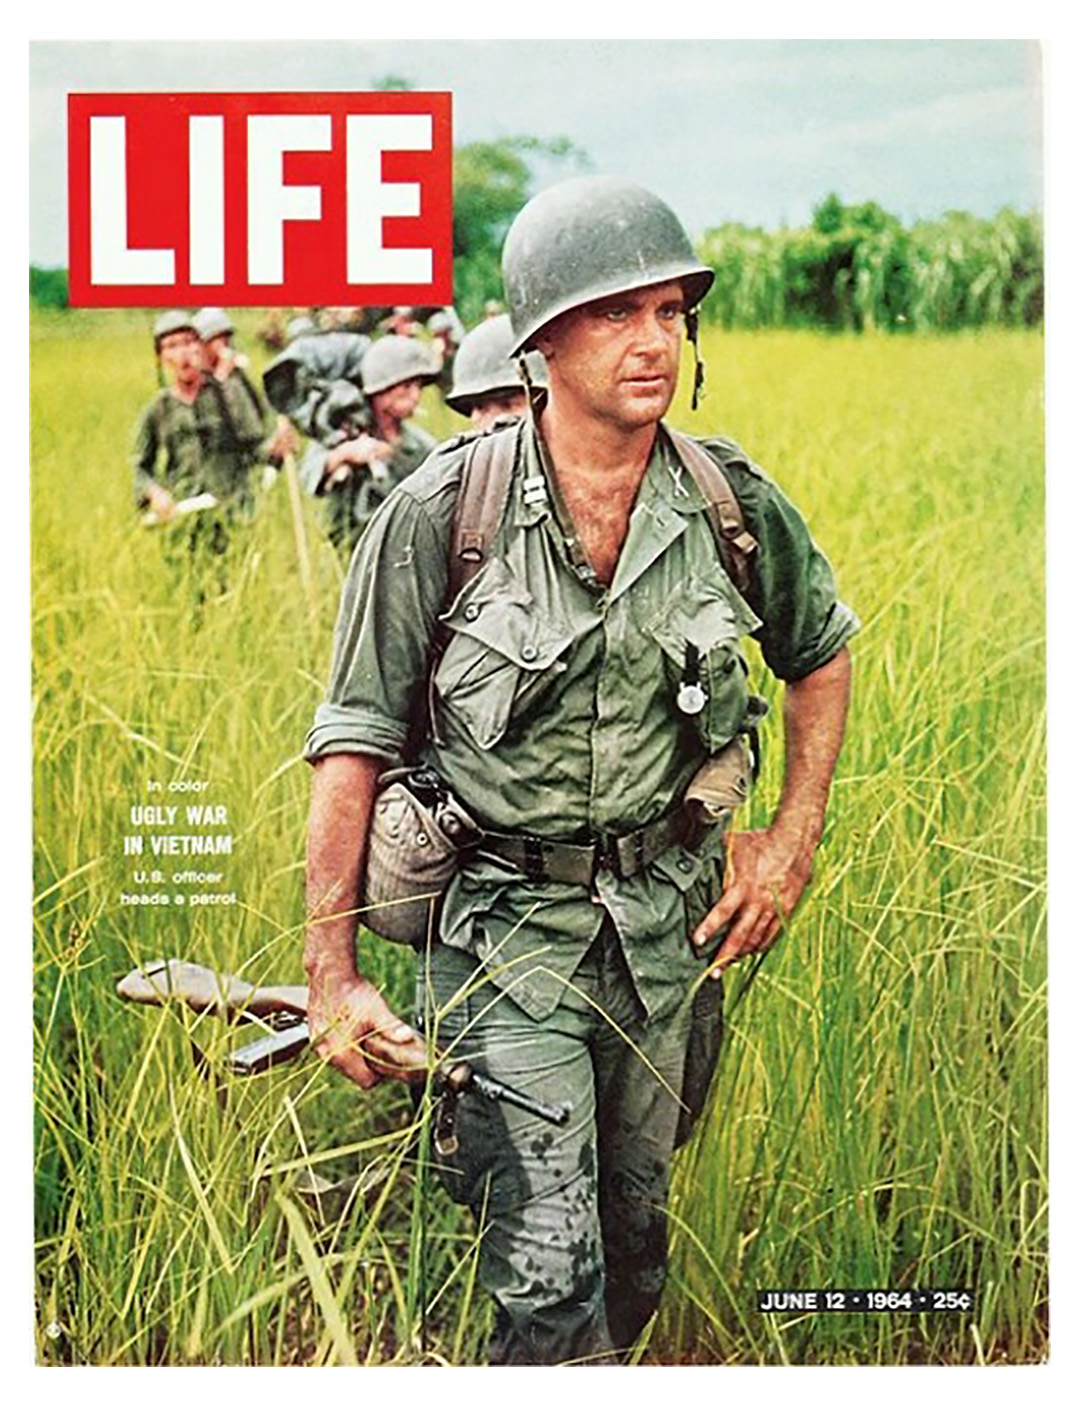 La portada de Life de 1967 muestra a soldados estadounidenses en Vietnam utilizando fusiles AK-47 en combate